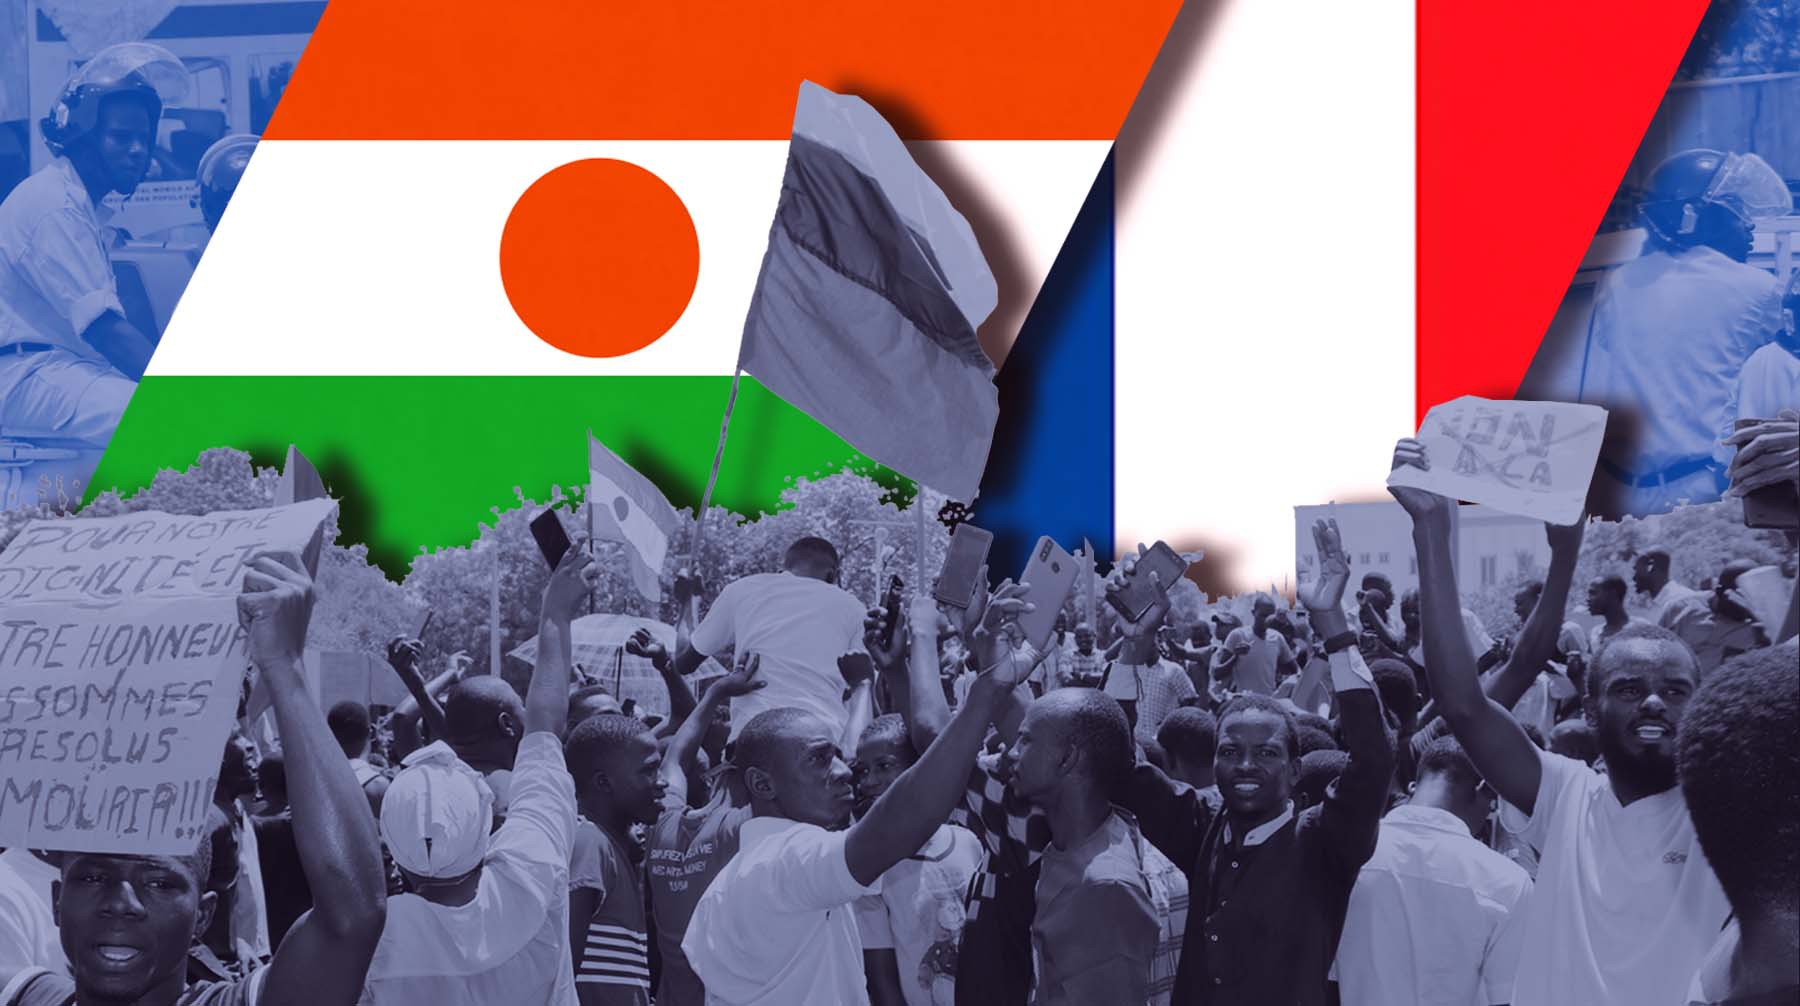 Dailystorm - Колониальное прошлое и общее настоящее: чего ждать от отношений Франции и Нигера после госпереворота